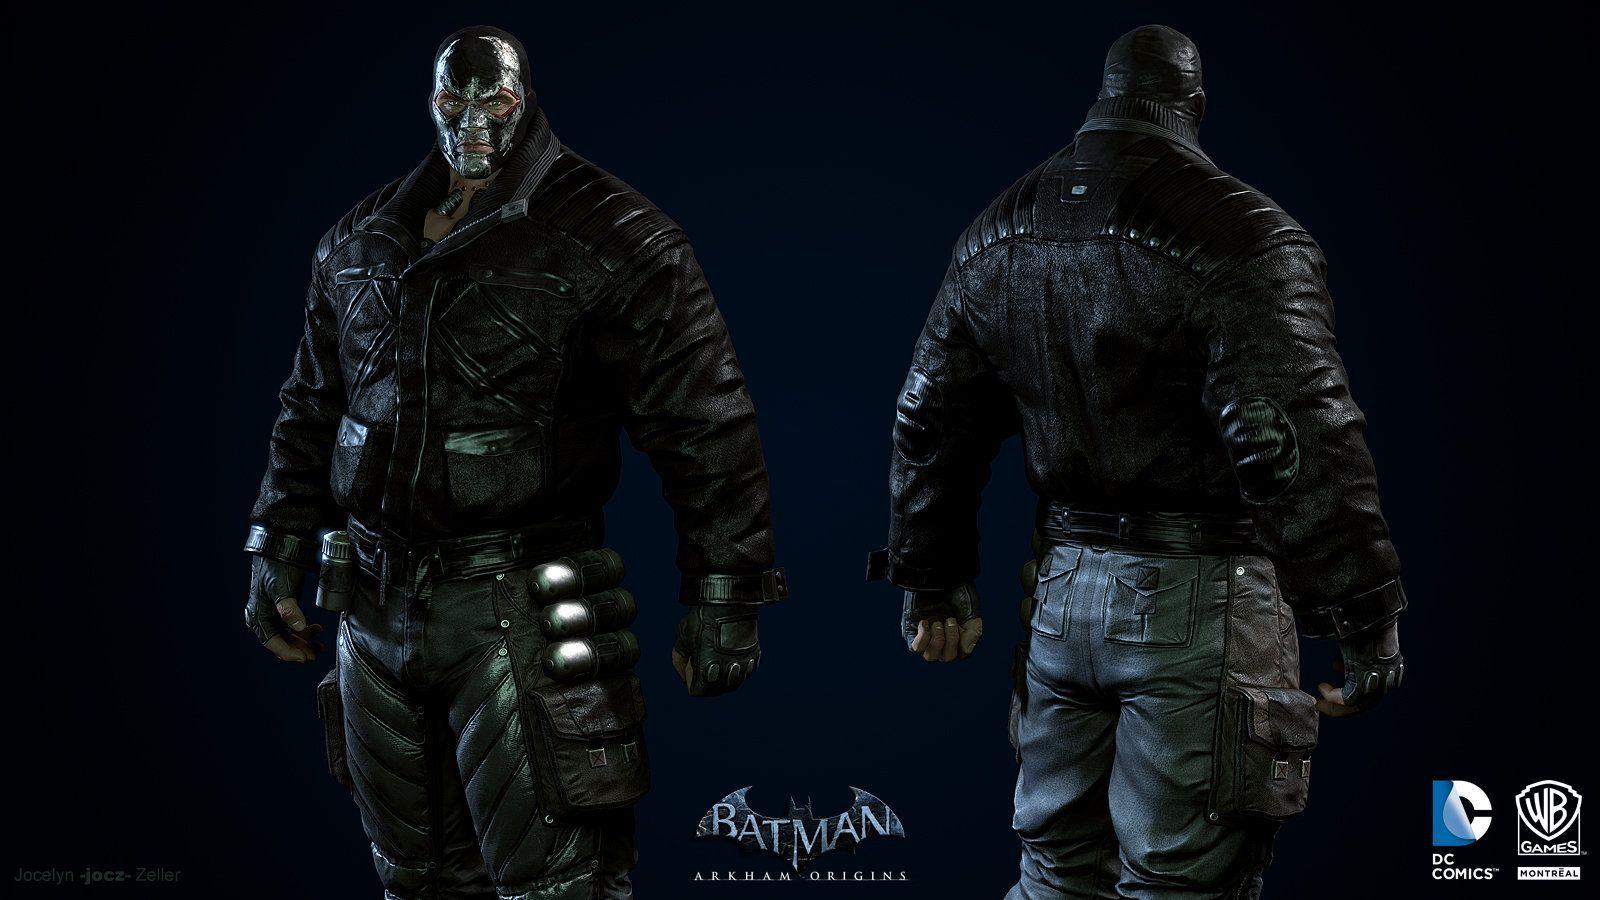 Batman: Arkham Origins, Bane Masked, Jocelyn jocz Zeller